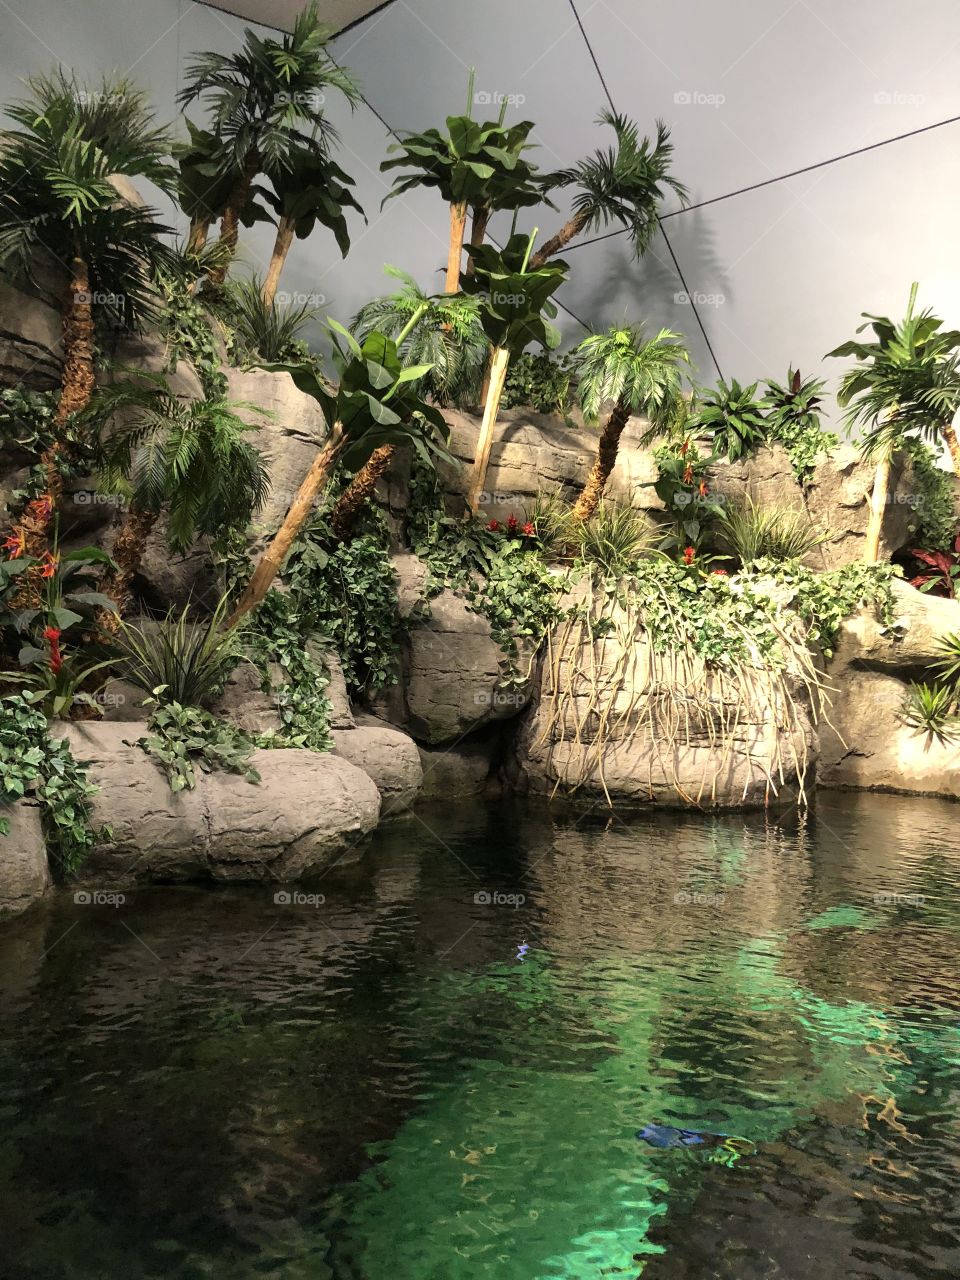 Aquarium scenes